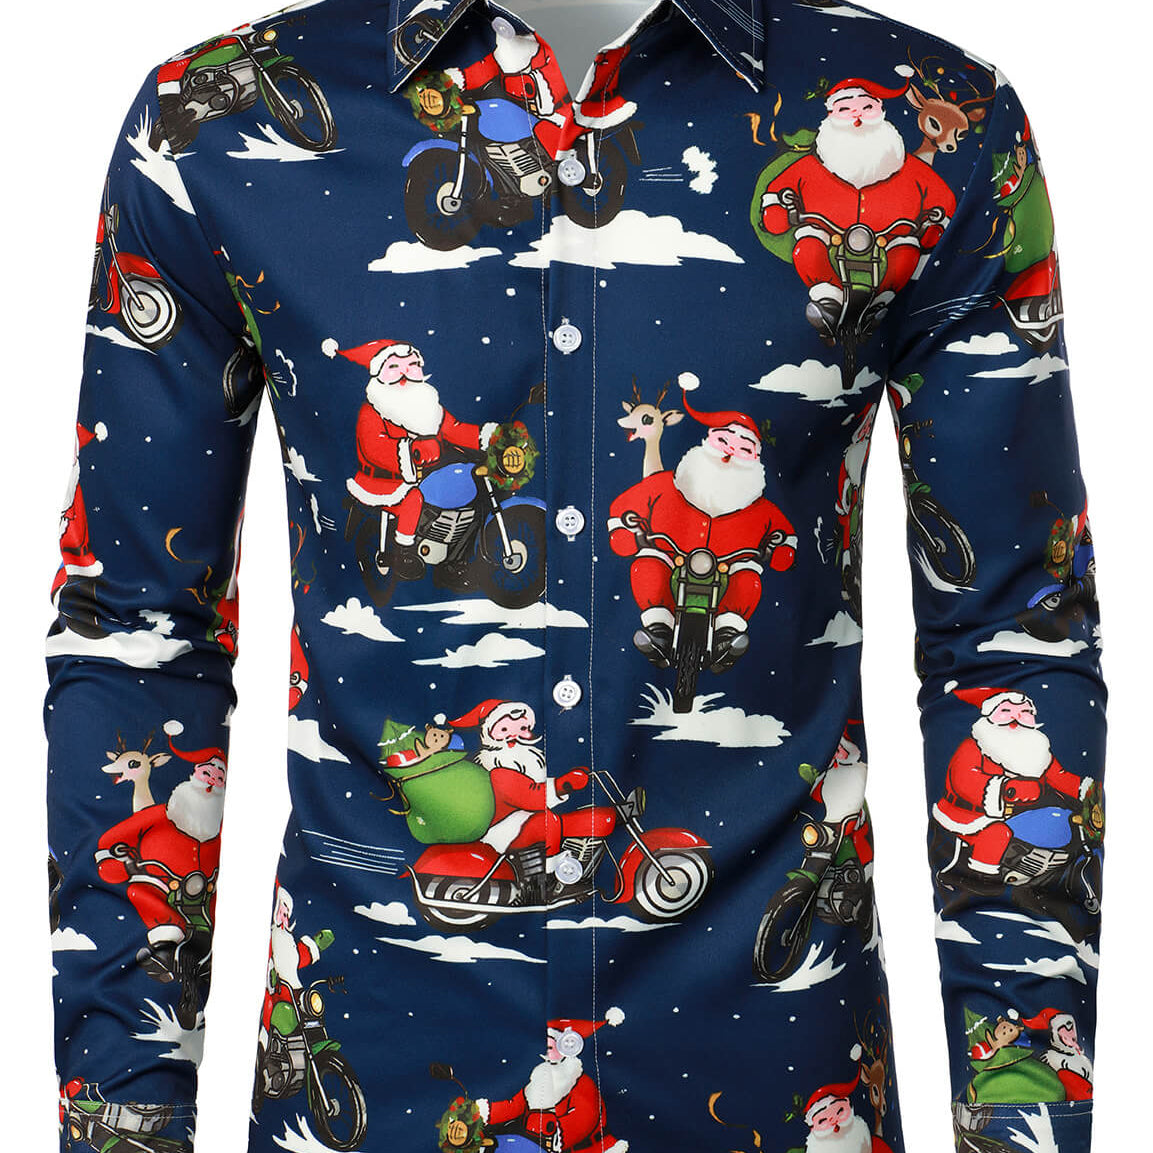 Camisa de manga larga divertida para fiesta con botones de regalos navideños de Papá Noel para hombre